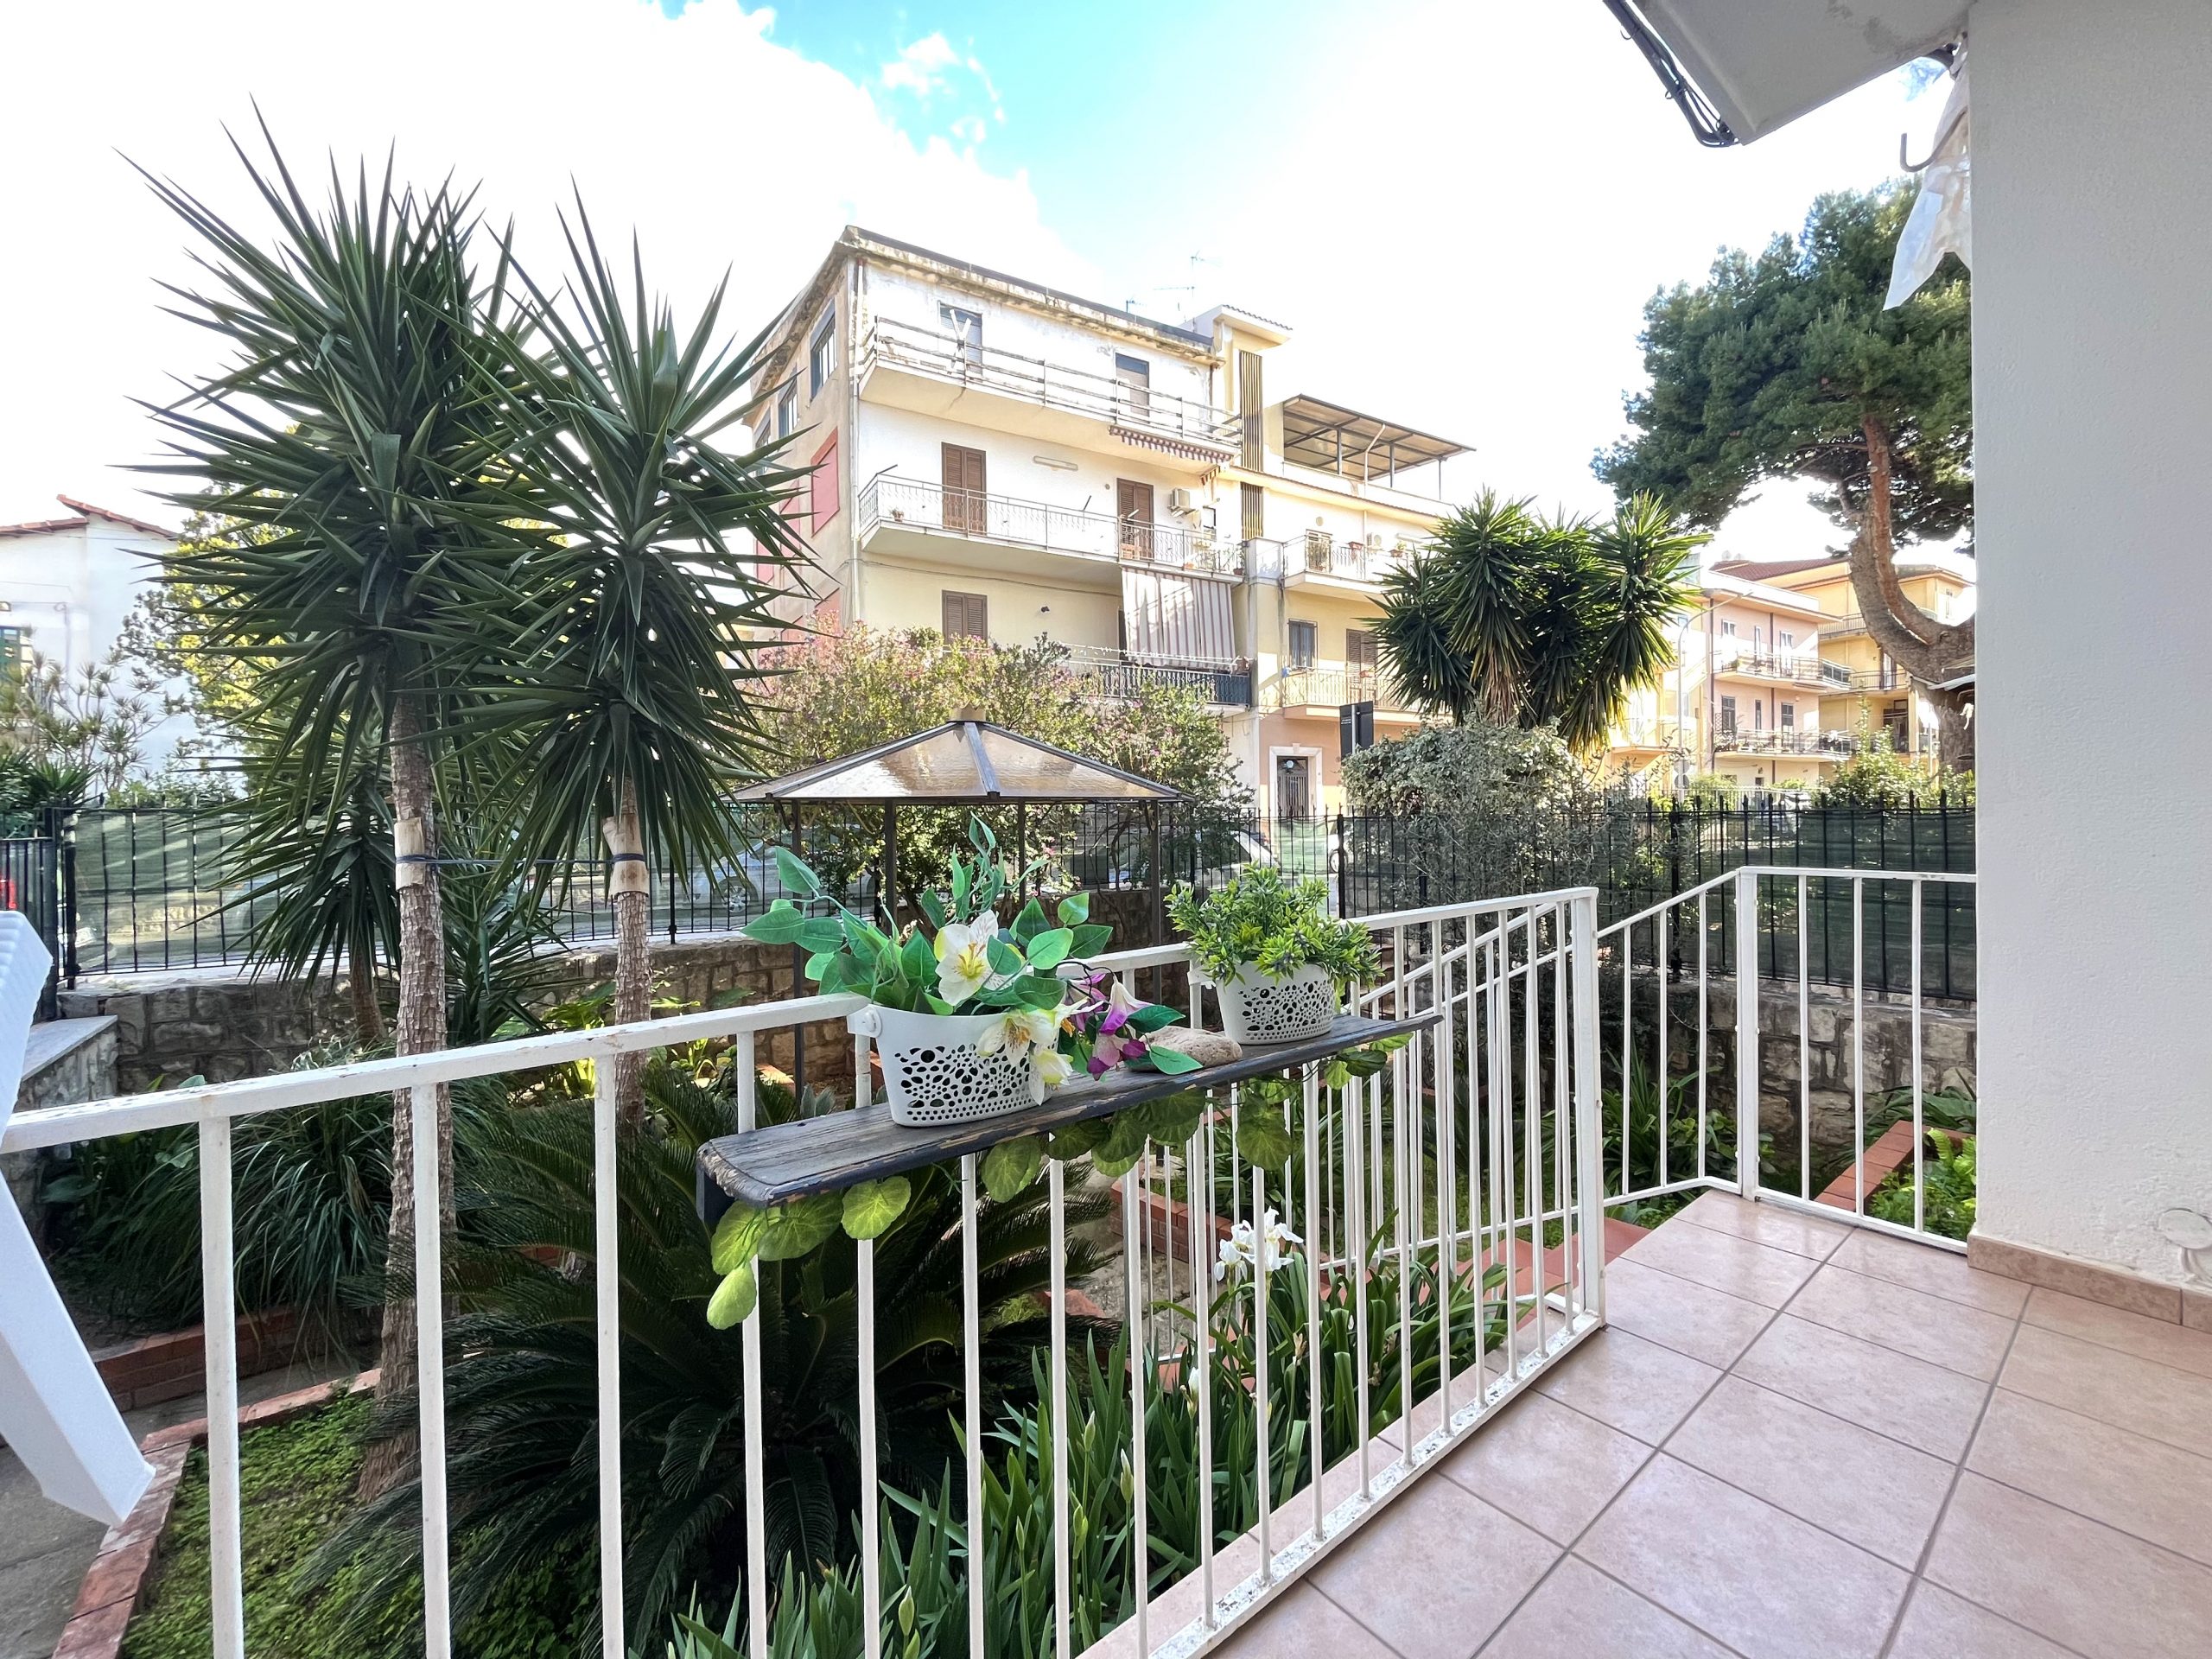 Appartamento con giardino in vendita a Partinico, Via F. Testa